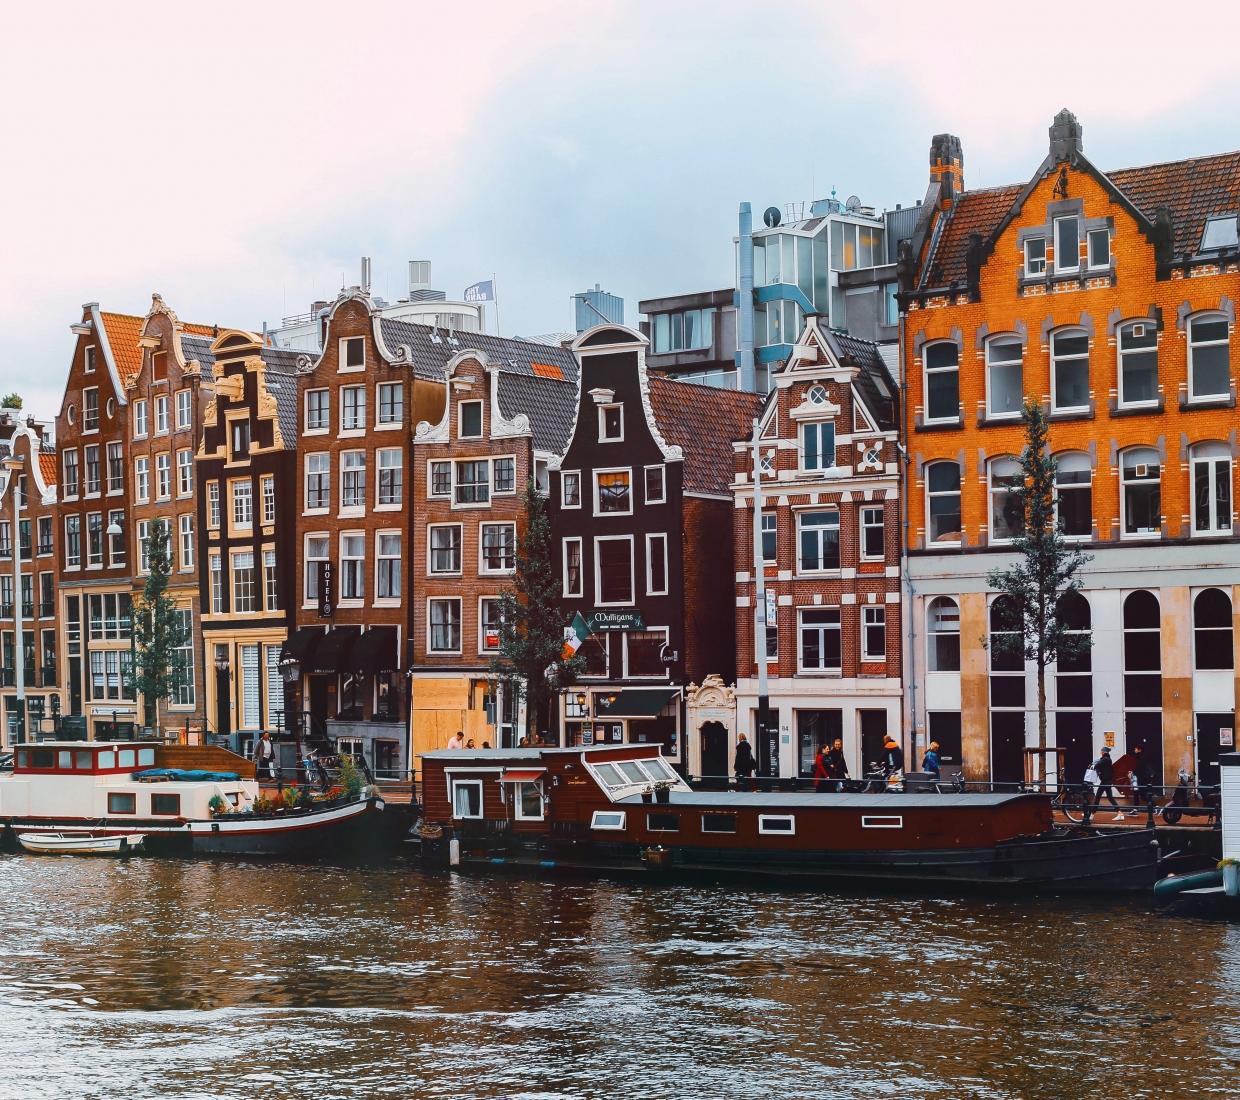 Seleção dos melhores e mais bonitos hotéis e casas de férias em Amsterdam